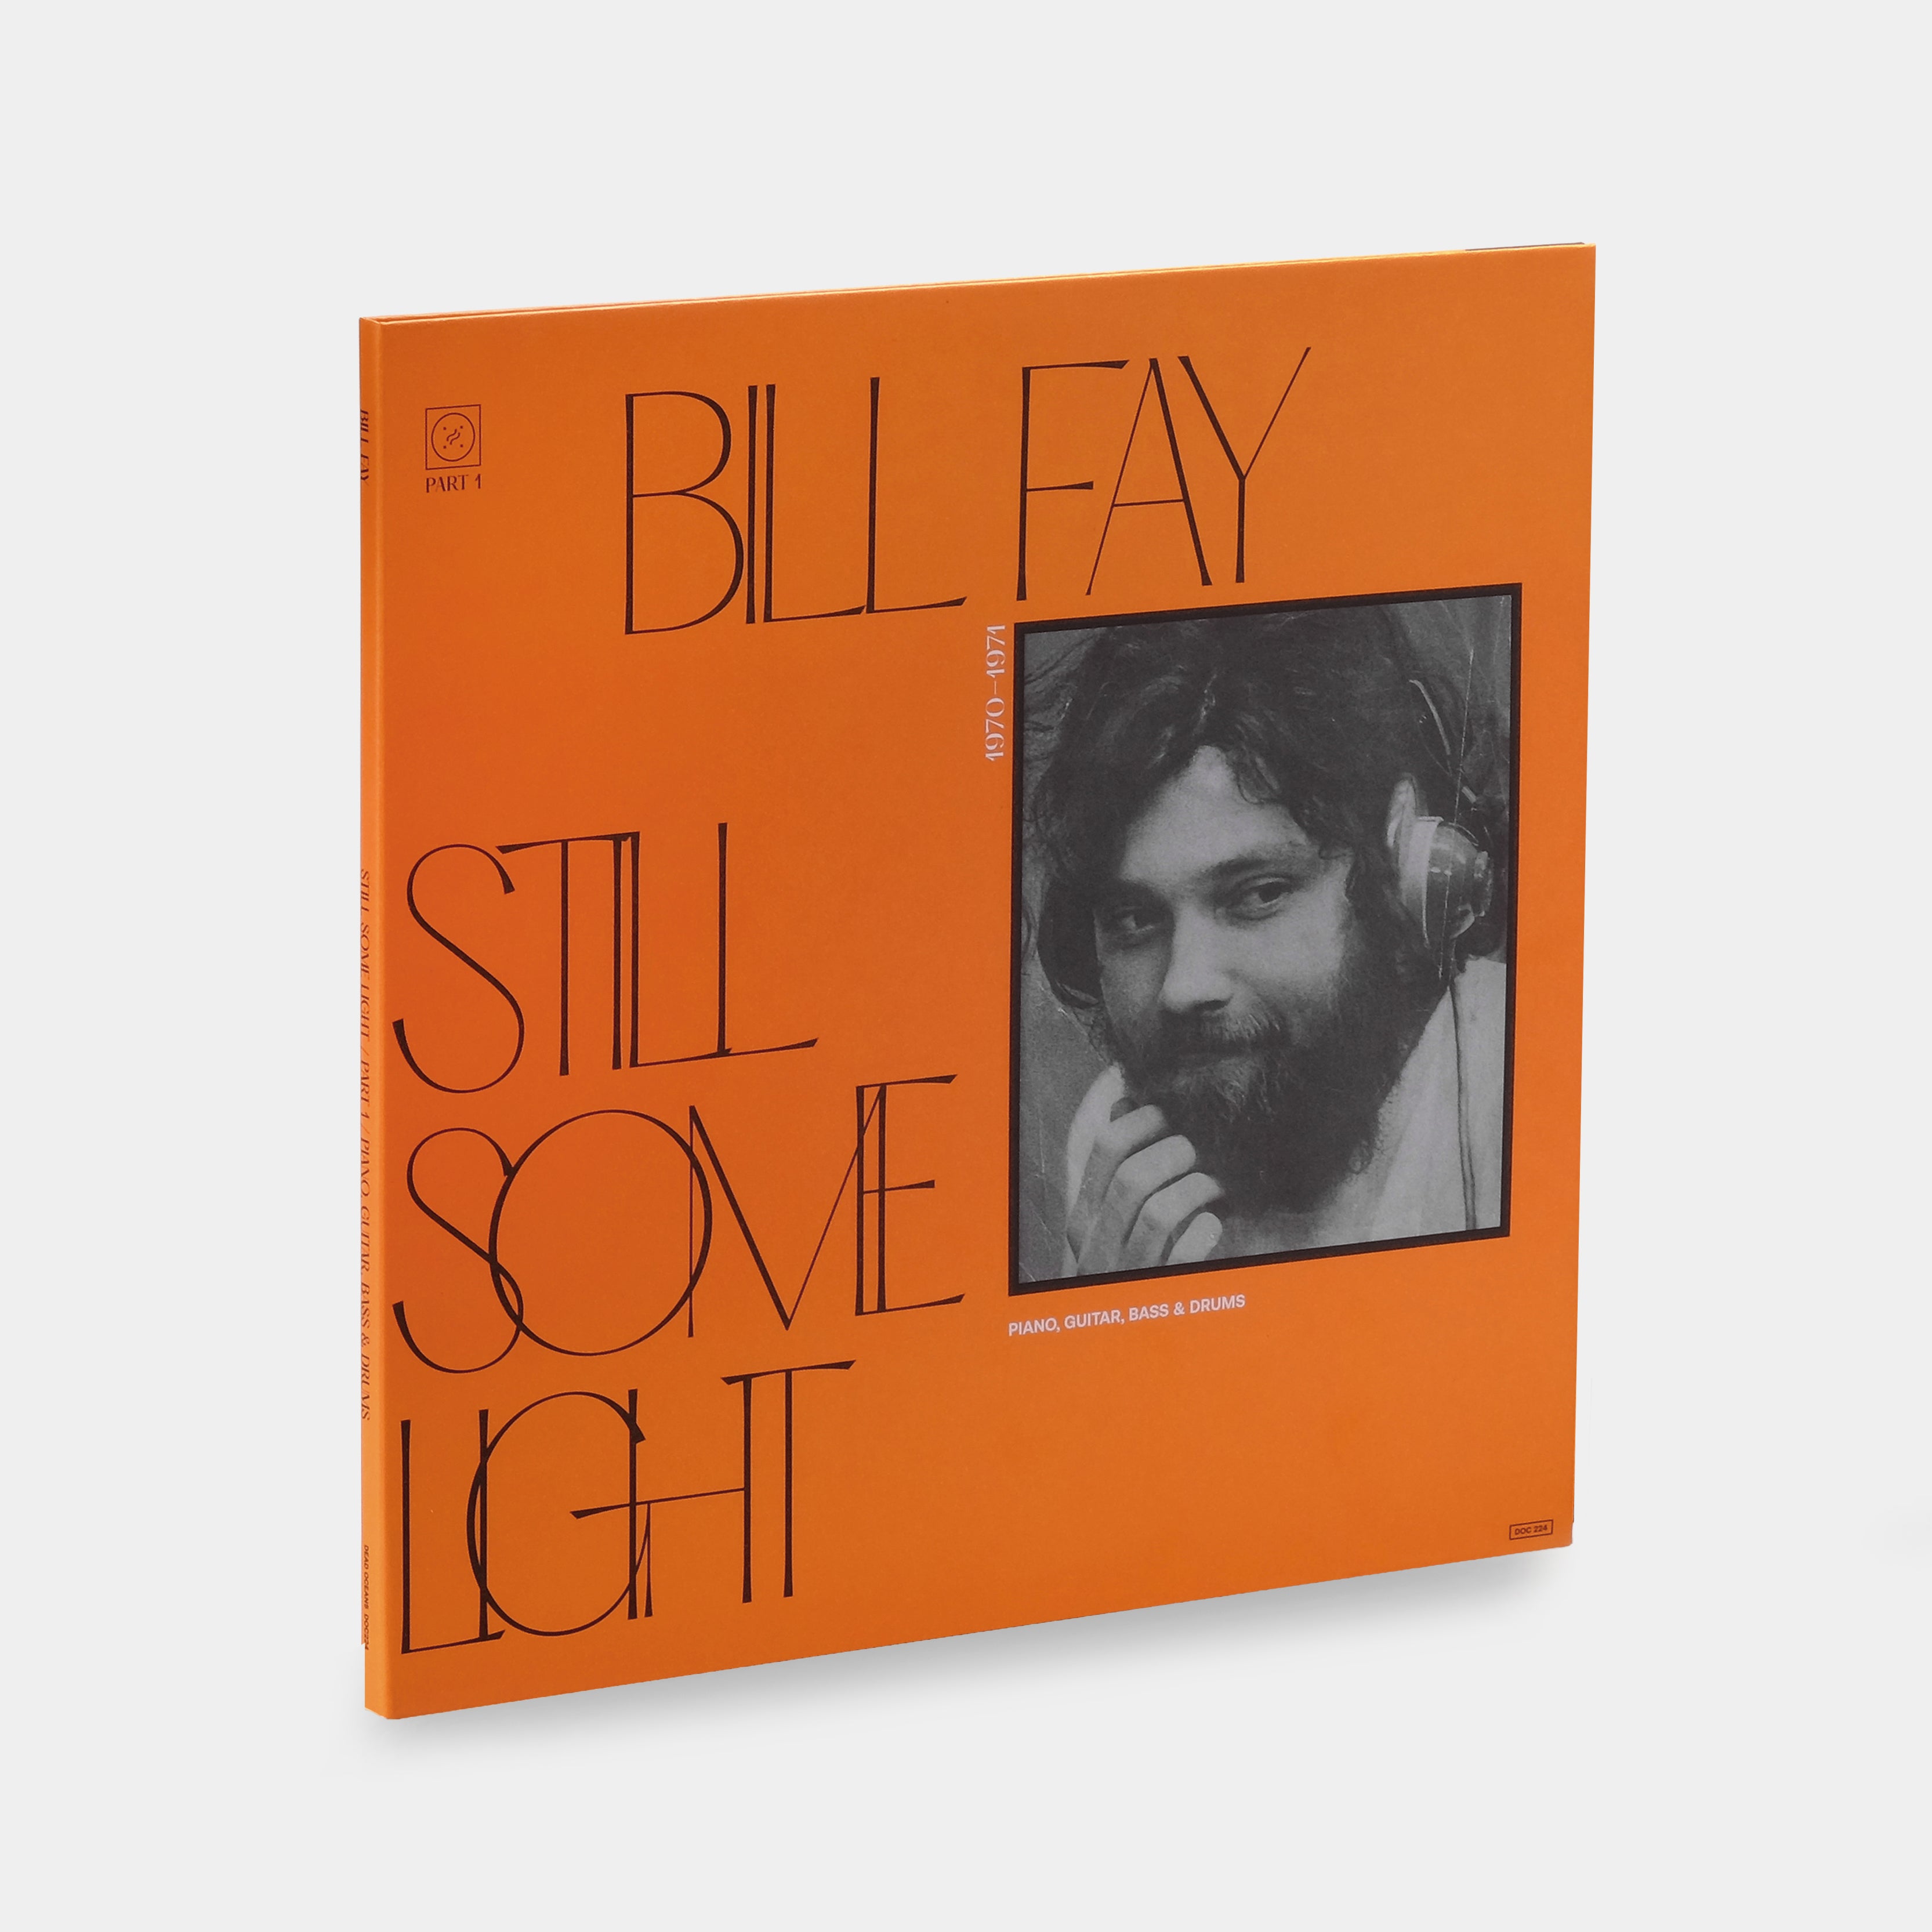 Bill Fay - Still Some Light Part 1 2xLP Vinyl Record